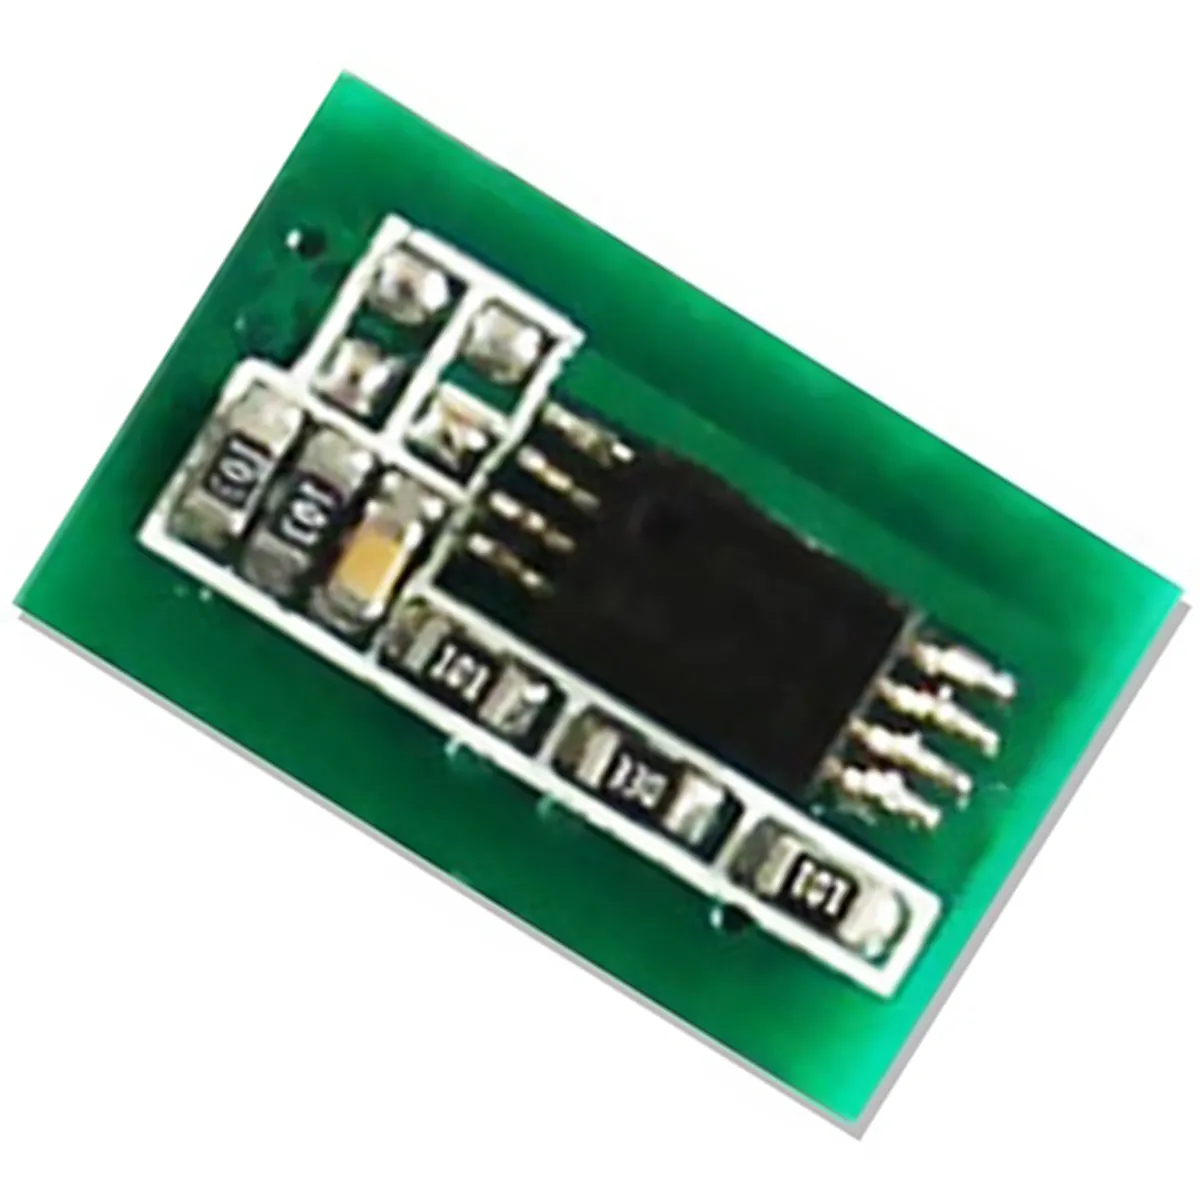 Chips cartucho de toner laser para Ricoh Aficio MPC 7500 MFP chip preto redefinir fotocopiadora chips